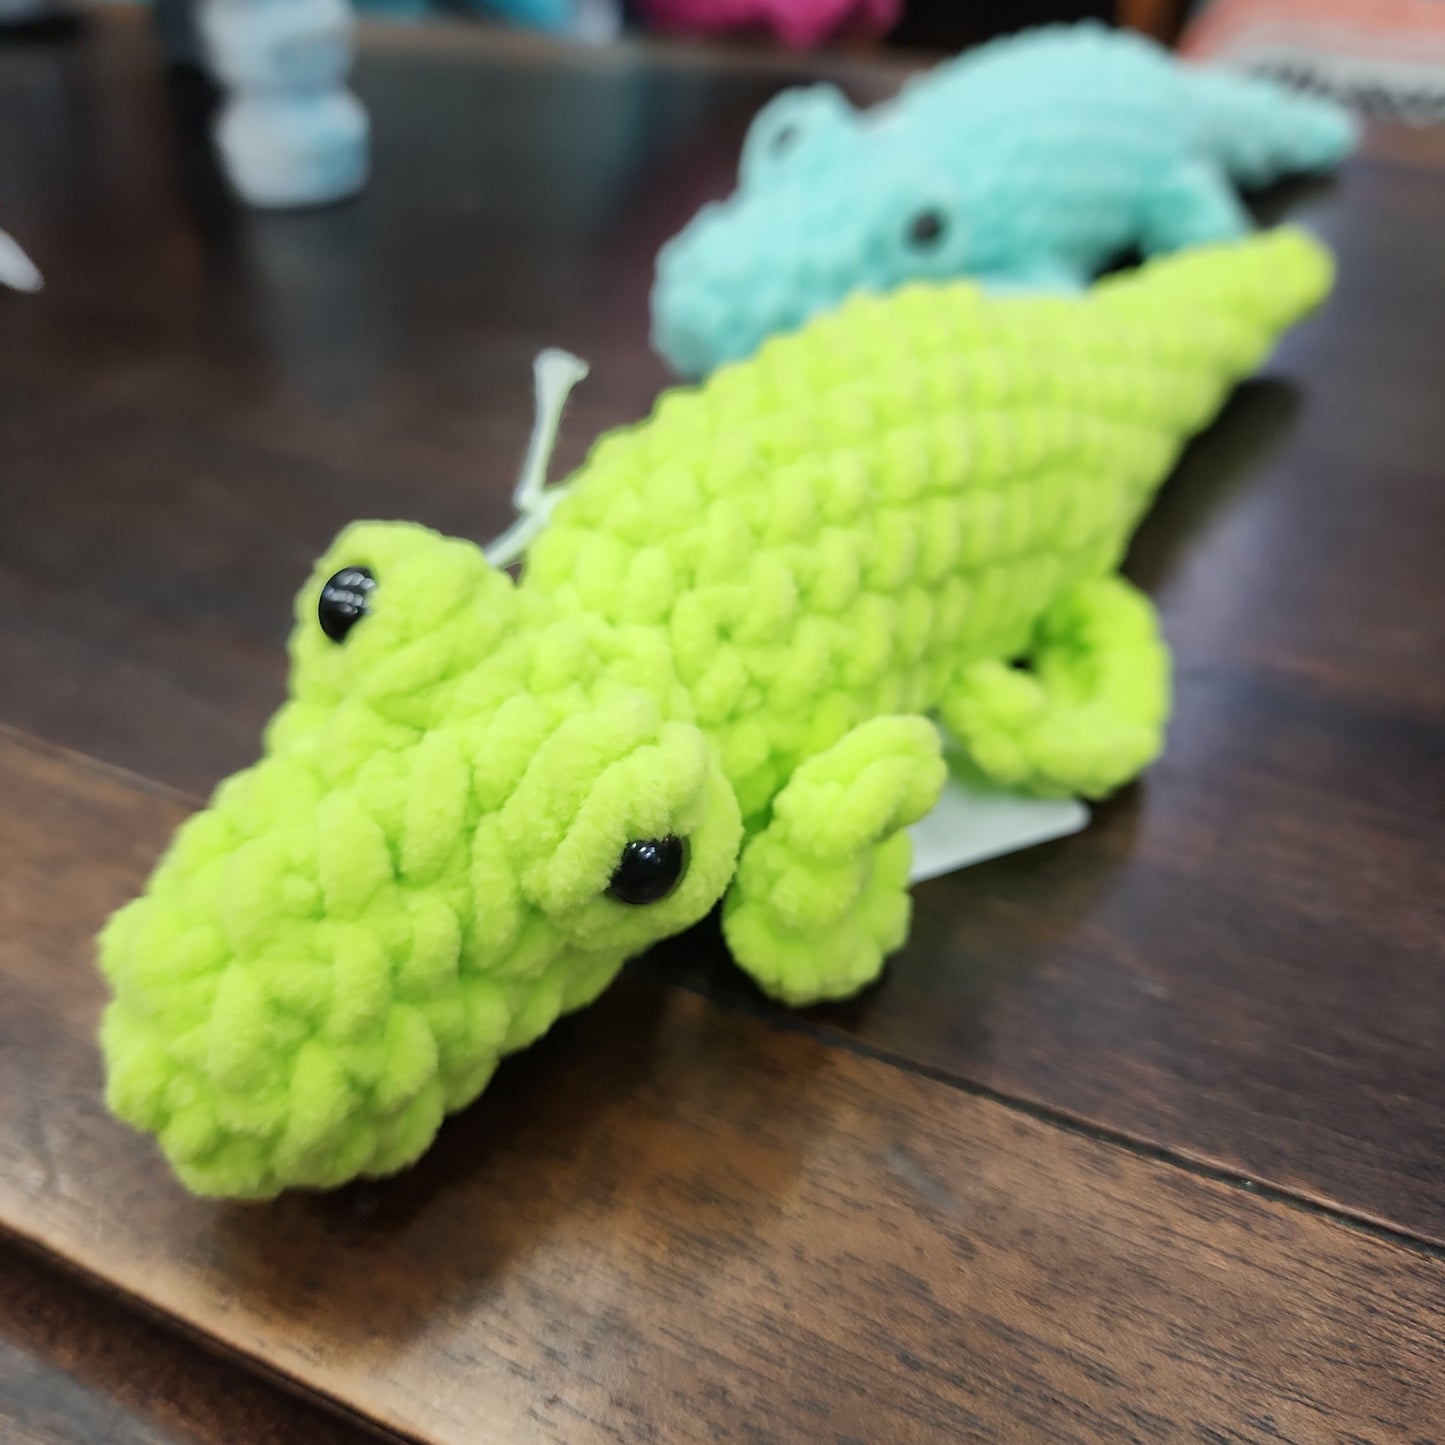 Crochet Creatures - Alligators